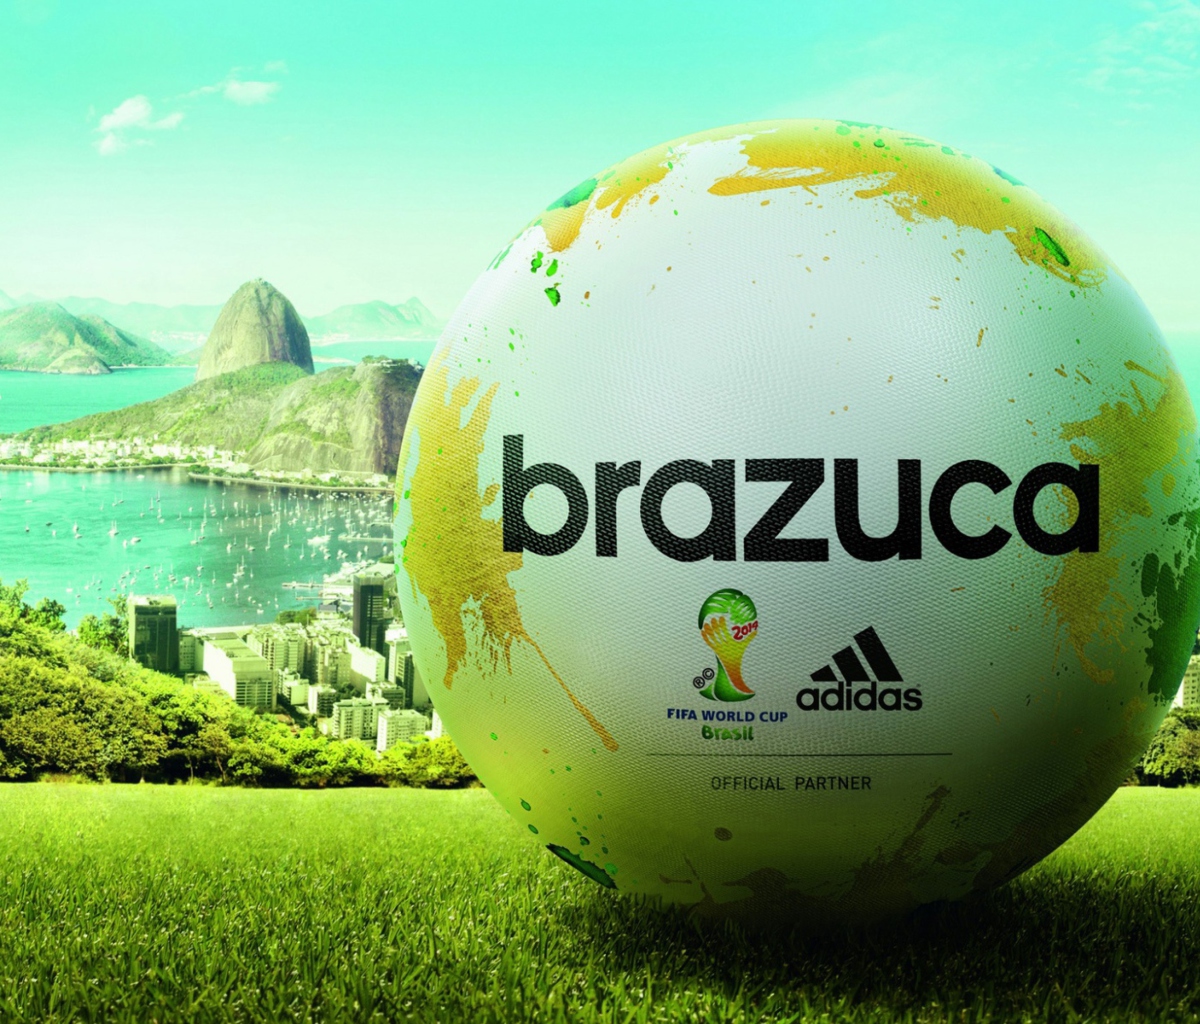 Das Adidas Brazuca Match Ball FIFA World Cup 2014 Wallpaper 1200x1024